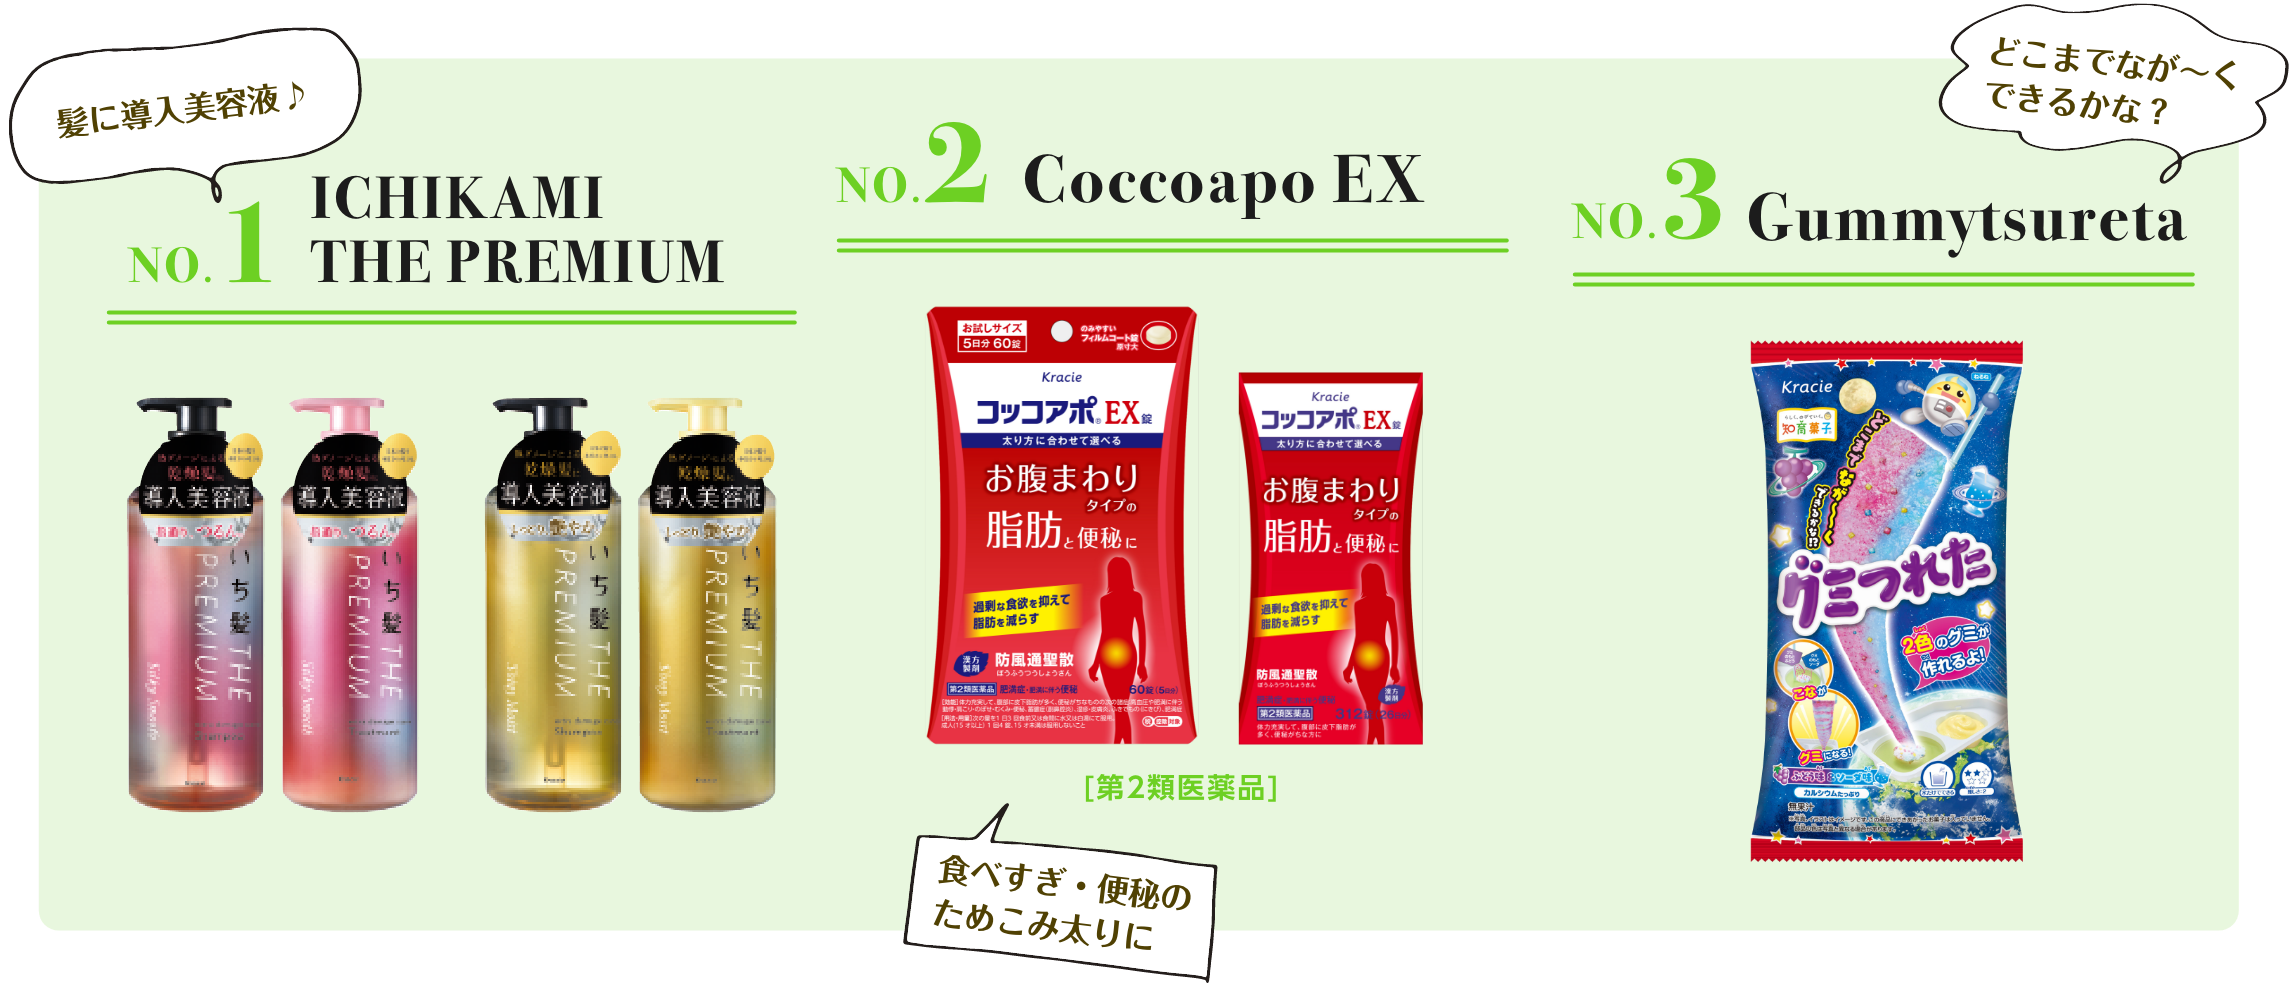 NO.1 ICHIKAMI THE PREMIUM NO.2 Coccoapo EX NO.3 Gummytsureta